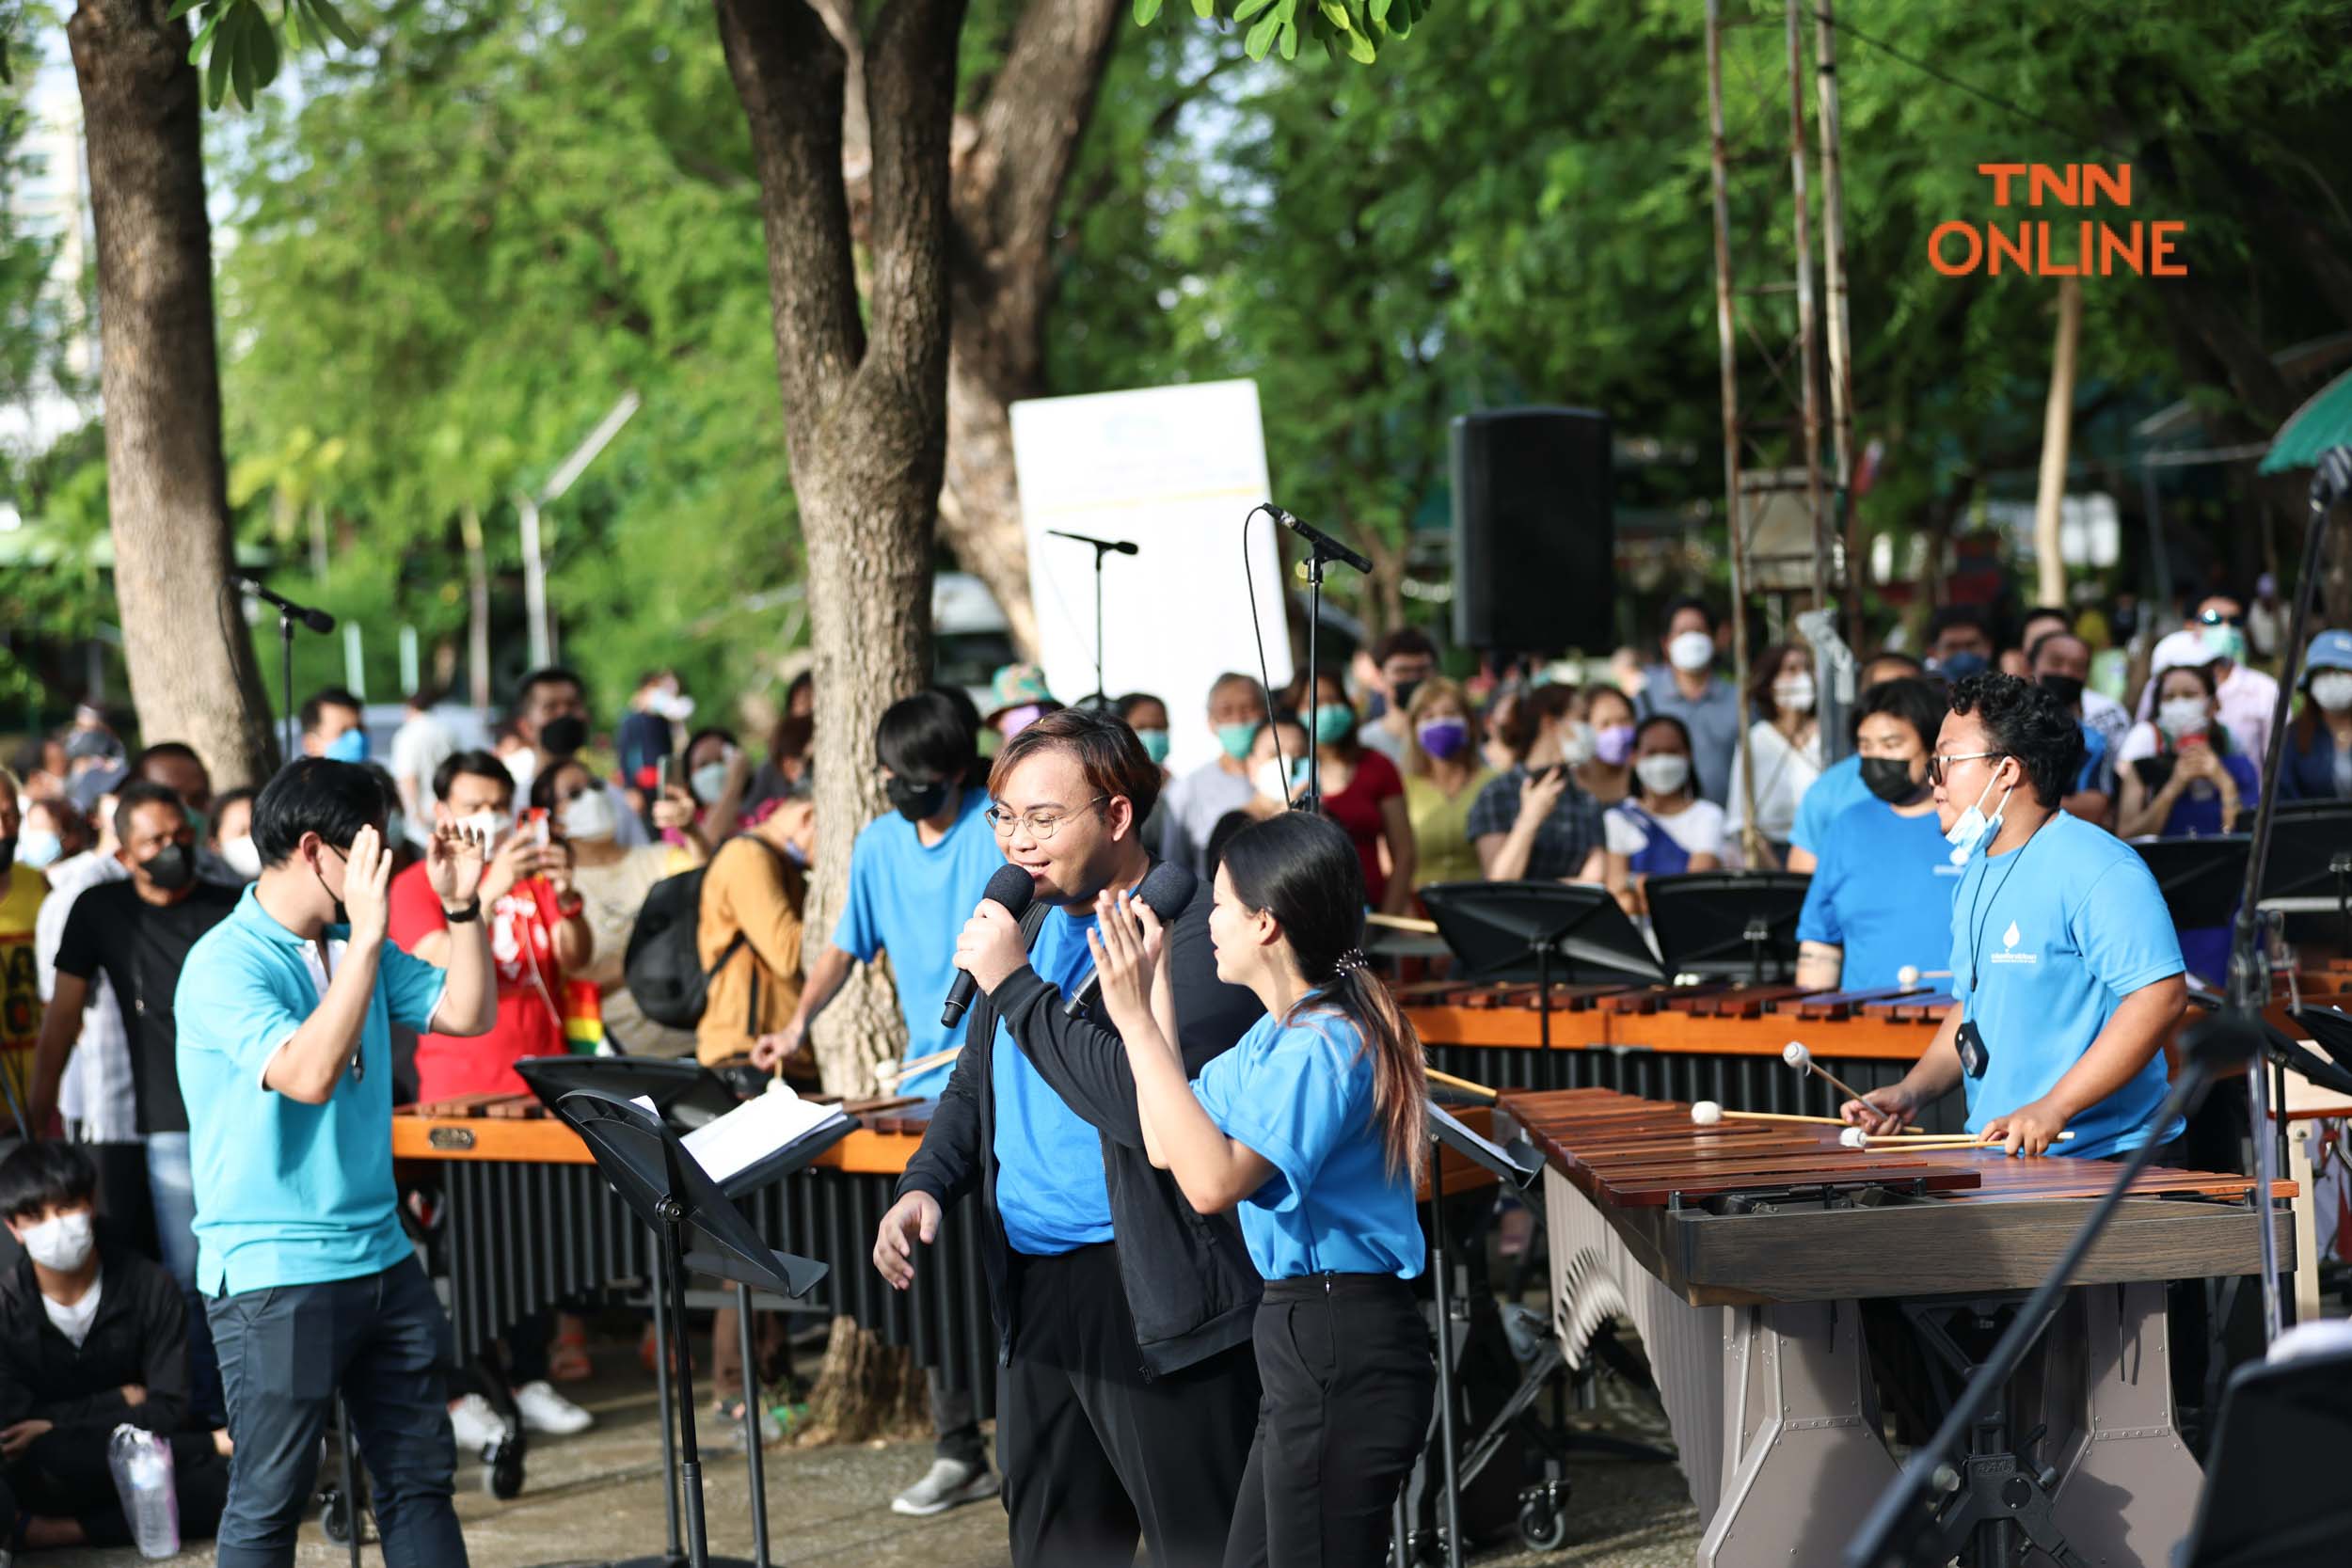 ชัชชาติร่วมงานดนตรีในสวน ประชาชนสนุกสนานผ่านบทเพลงหลากสไตล์